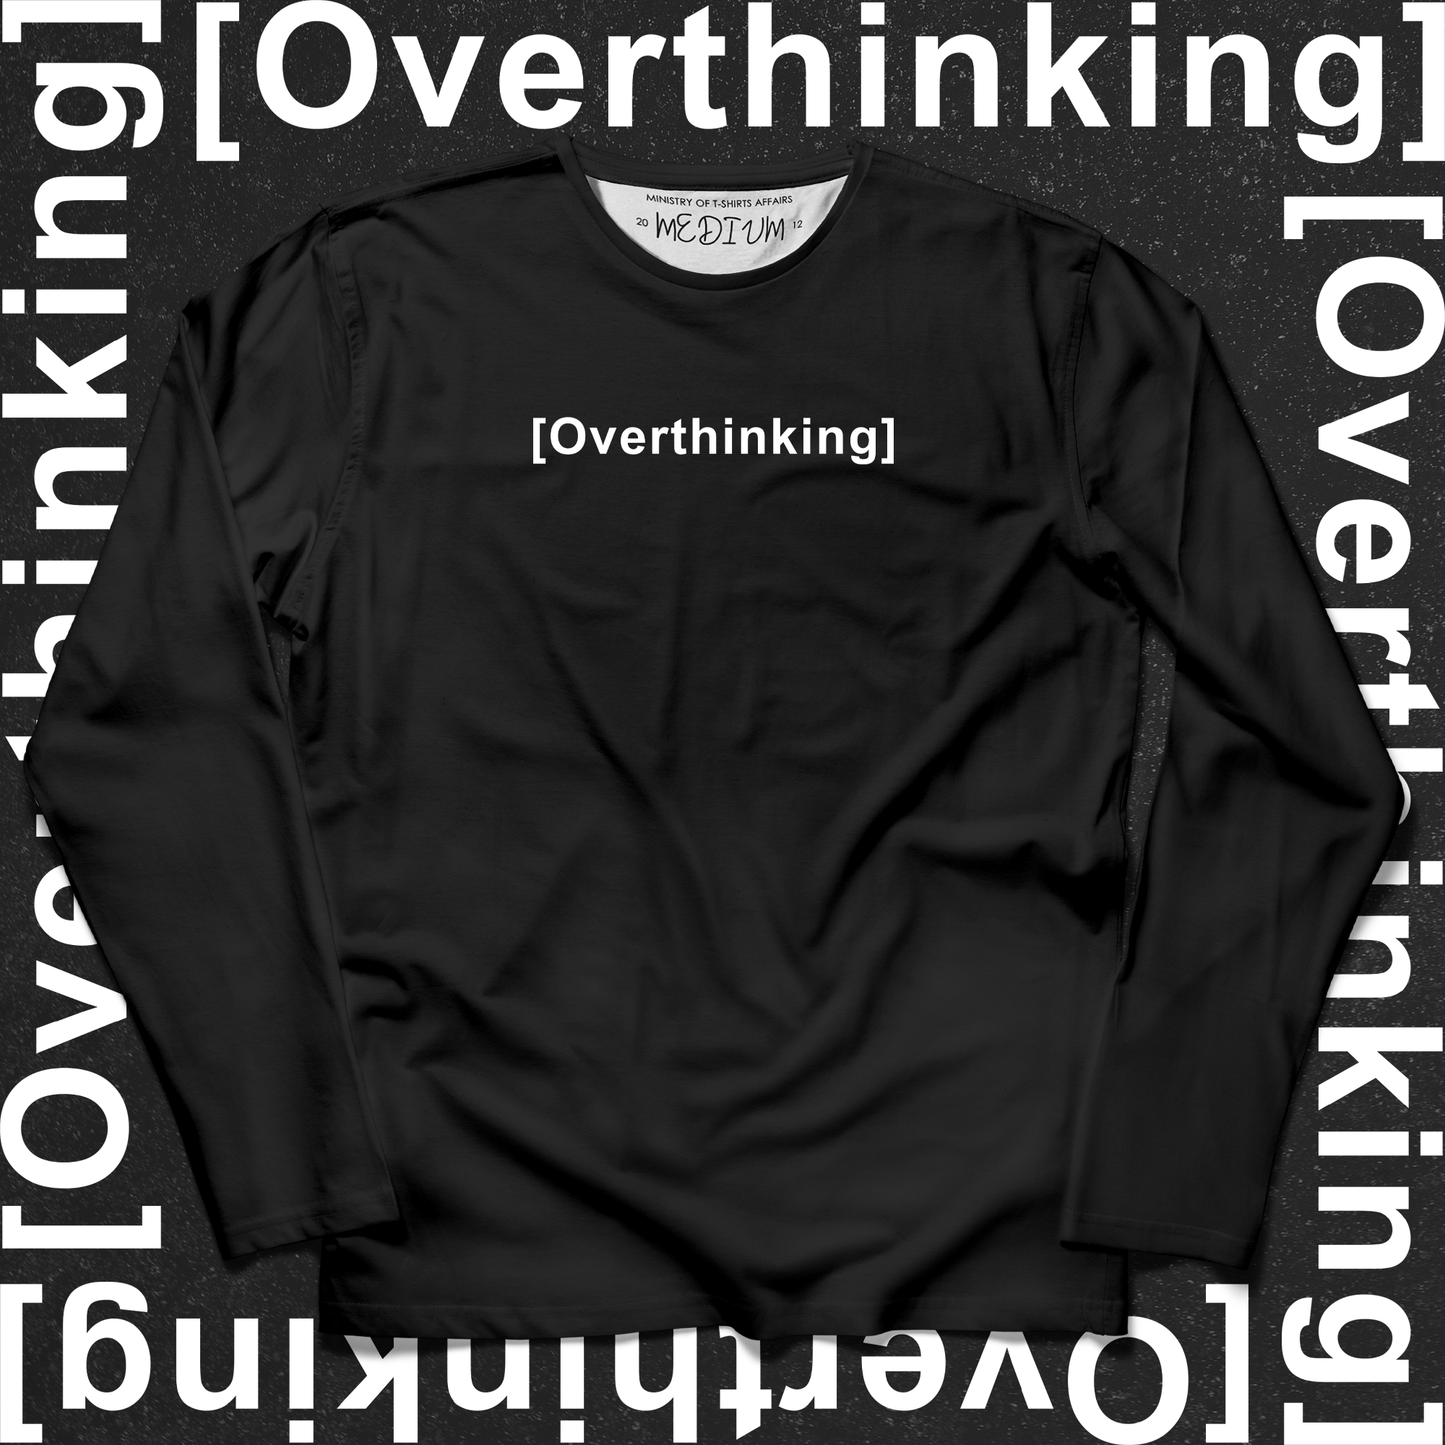 Overthinking Long Sleeves